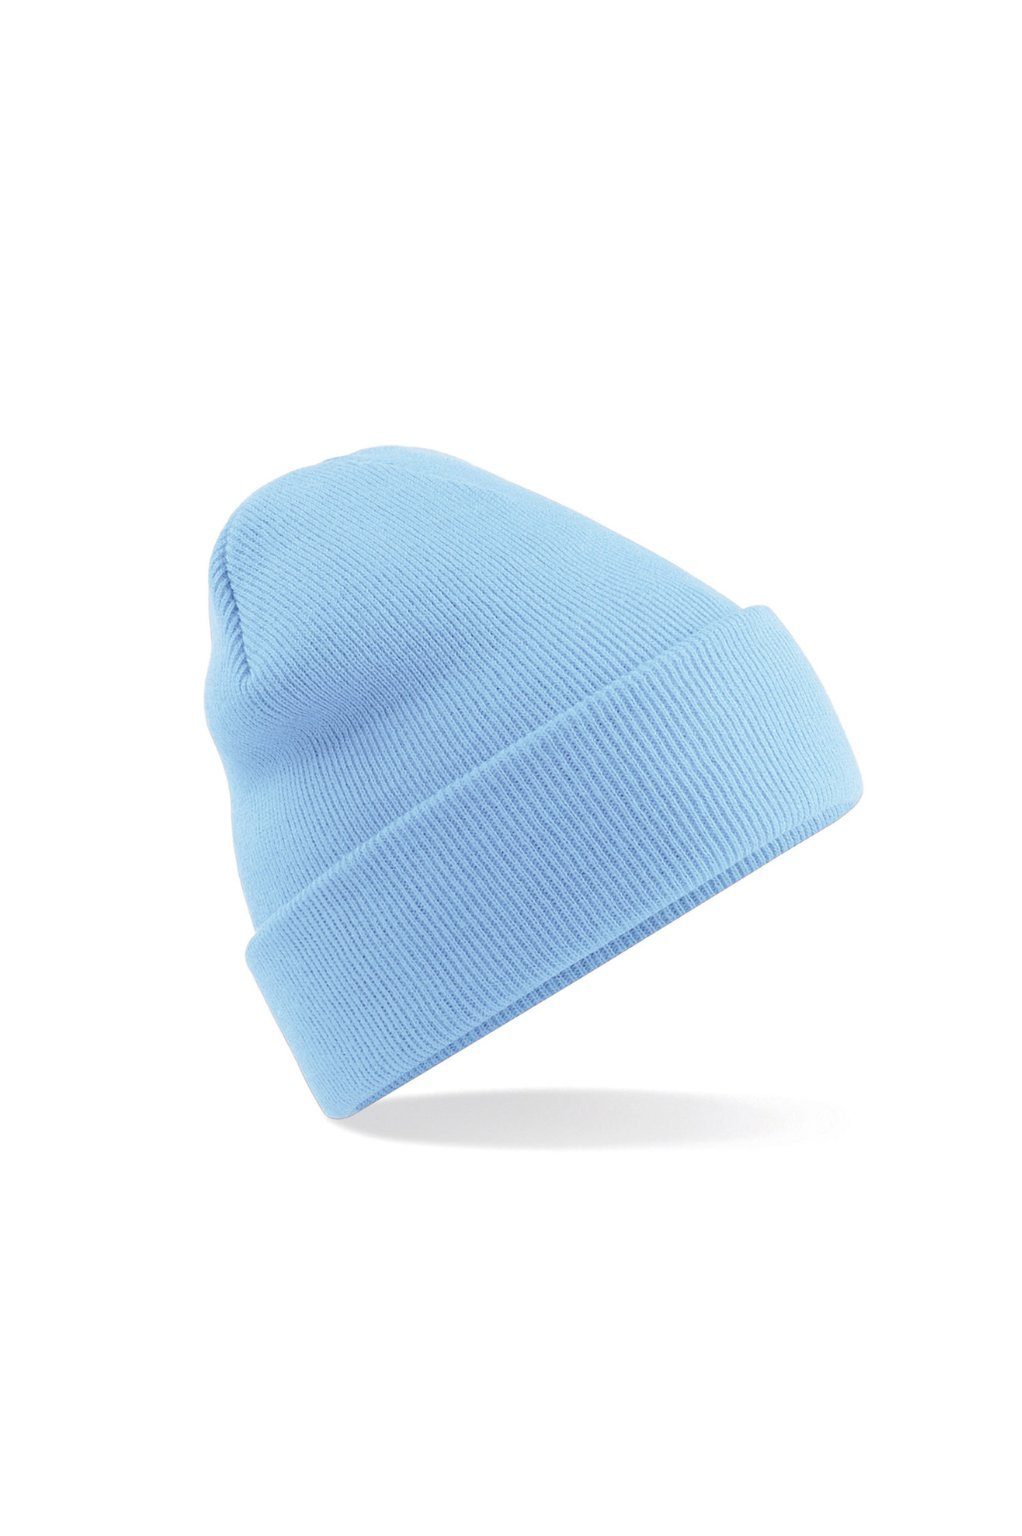 Soft ESMINA durch - Strickmütze blue & anschmiegsam Beanie ocean seidenweich Touch, Comfy extrem wärmend